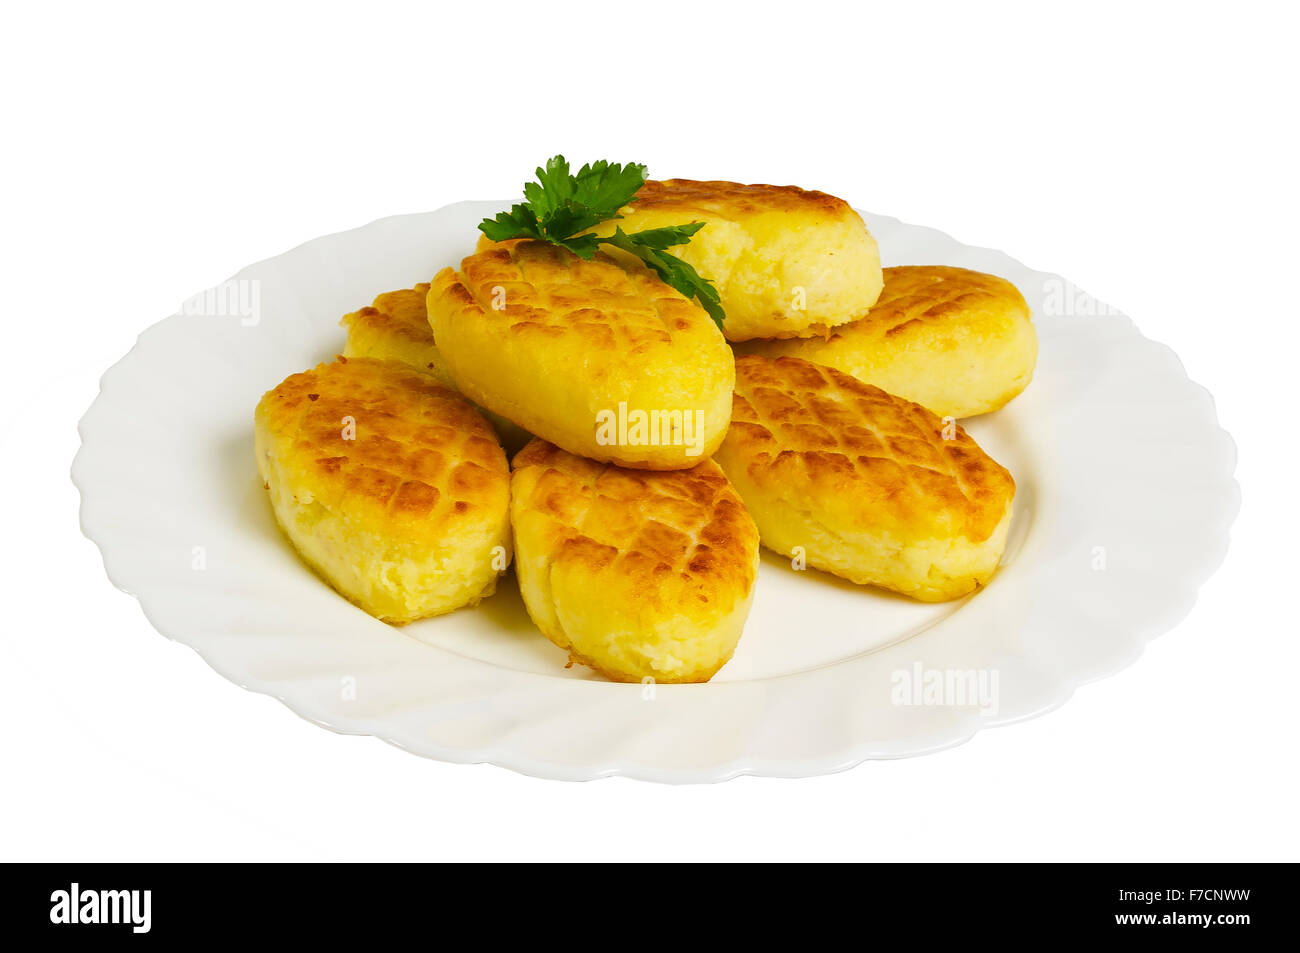 Torte di patate con funghi sulla piastra, isolato su sfondo bianco Foto Stock